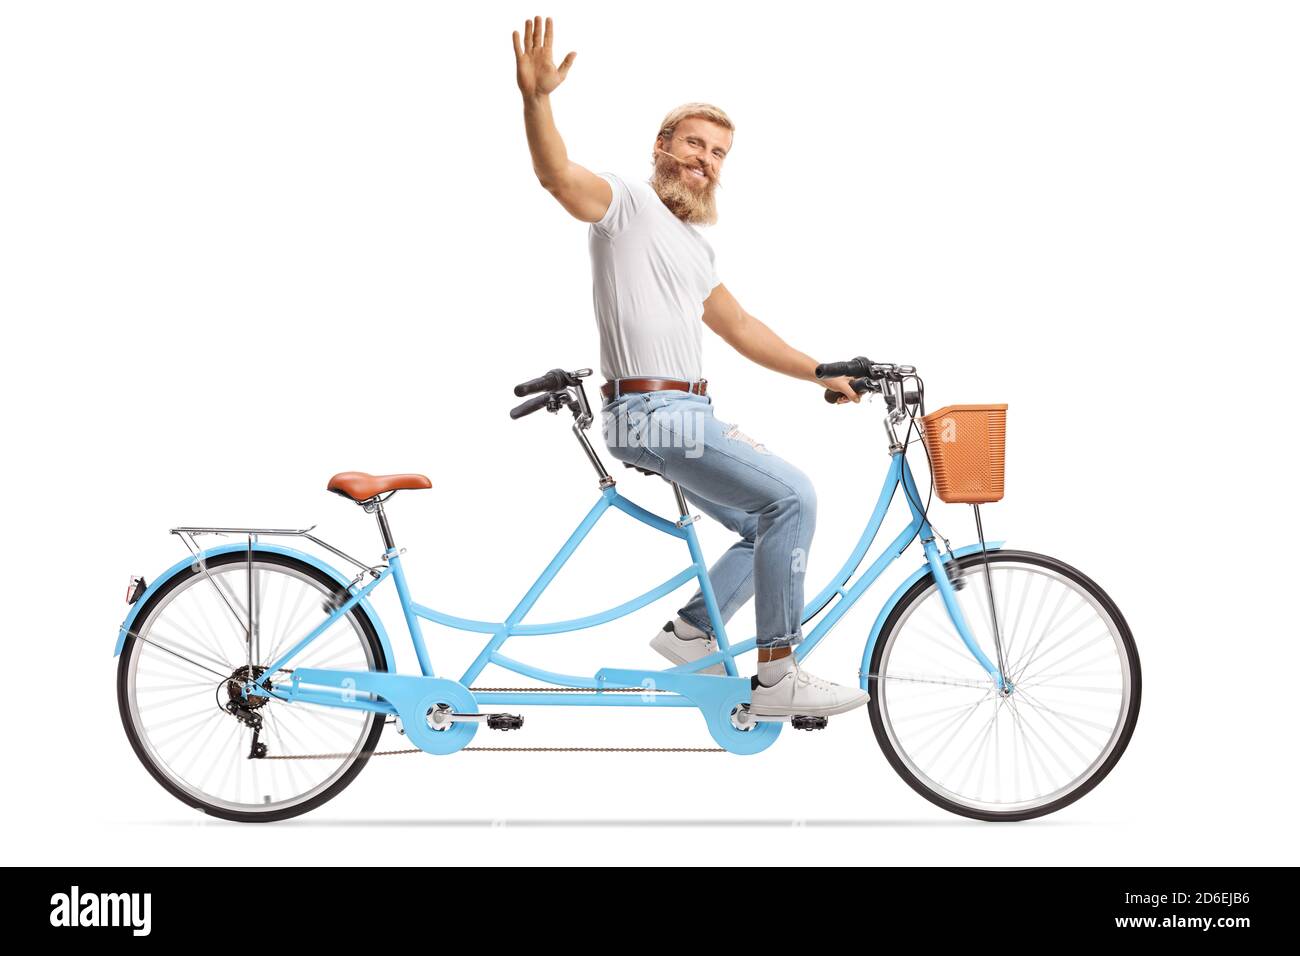 Lächelnder bärtiger Mann, der alleine auf einem Tandem-Fahrrad fährt und winkt Isoliert auf weißem Hintergrund Stockfoto